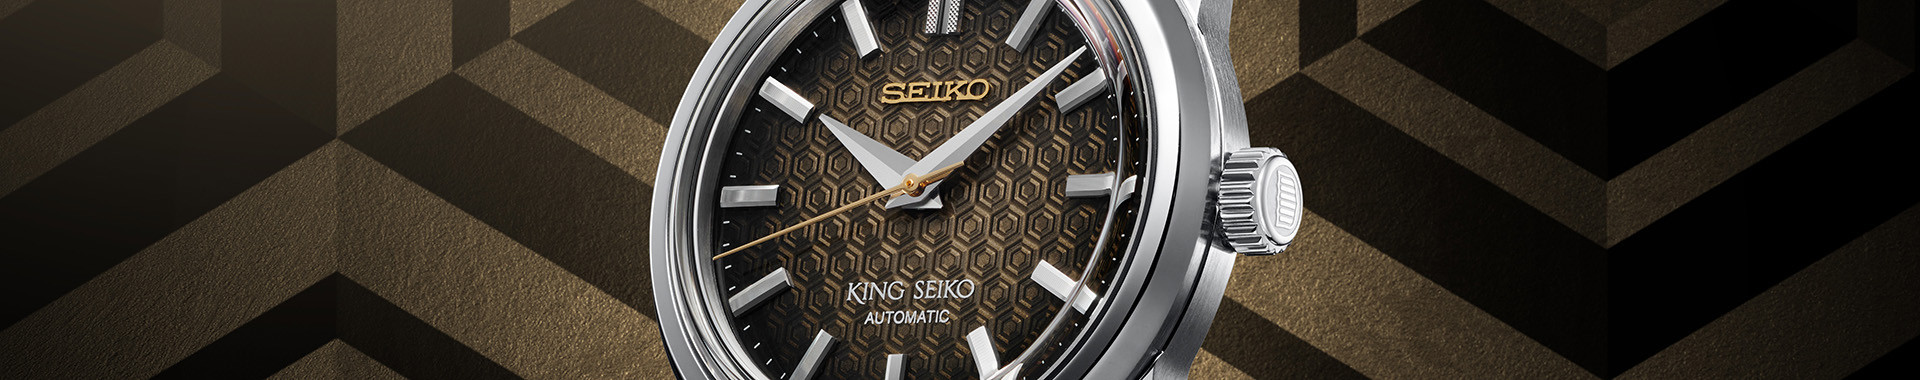 King Seiko Men's Watch Online | Seiko Boutique